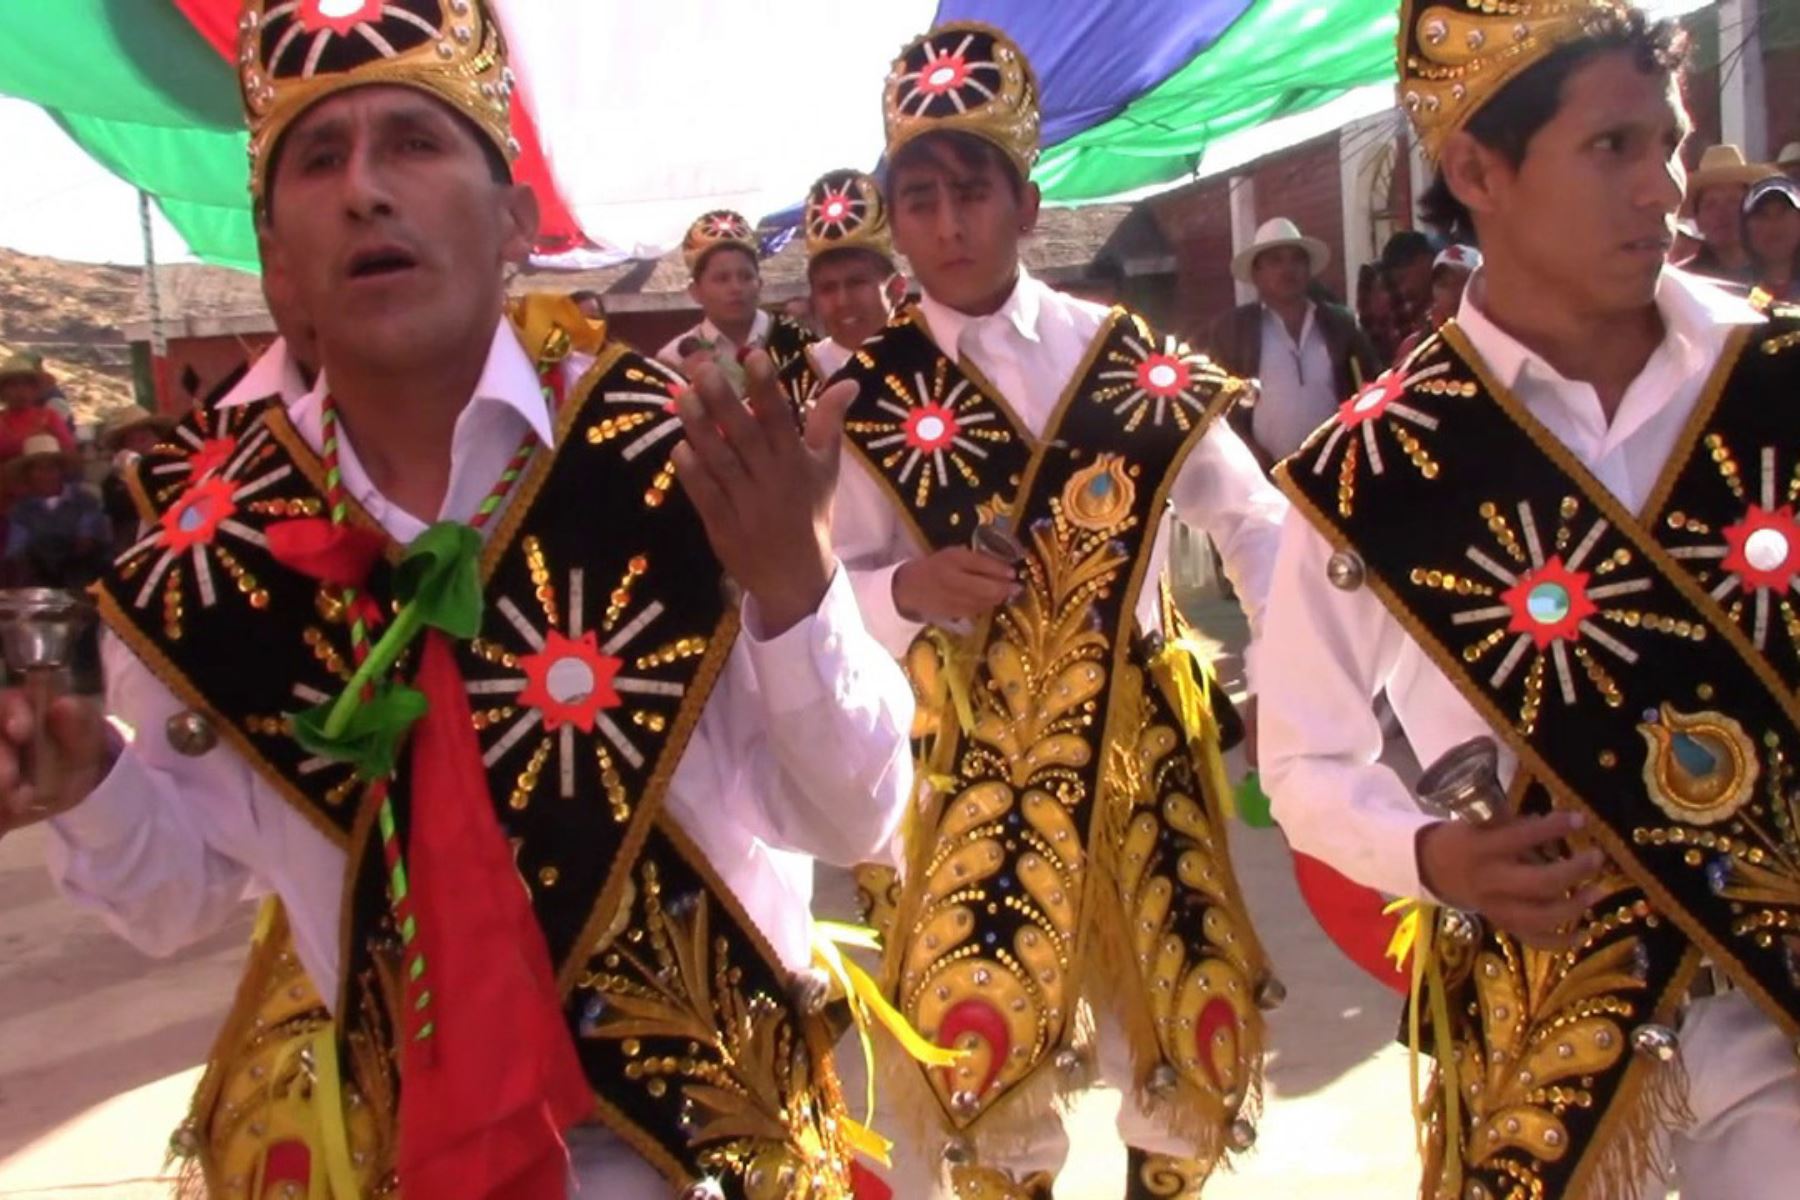 El Ministerio de Cultura declaró Patrimonio Cultural de la Nación a la Danza de los Negritos del Suroeste de la provincia de Huaytará, de los distritos de Ayaví, Tambo, Santiago de Chocorvos, Santo Domingo de Capillas, San Francisco de Sangayaico y San Isidro, de la provincia de Huaytará, región Huancavelica.